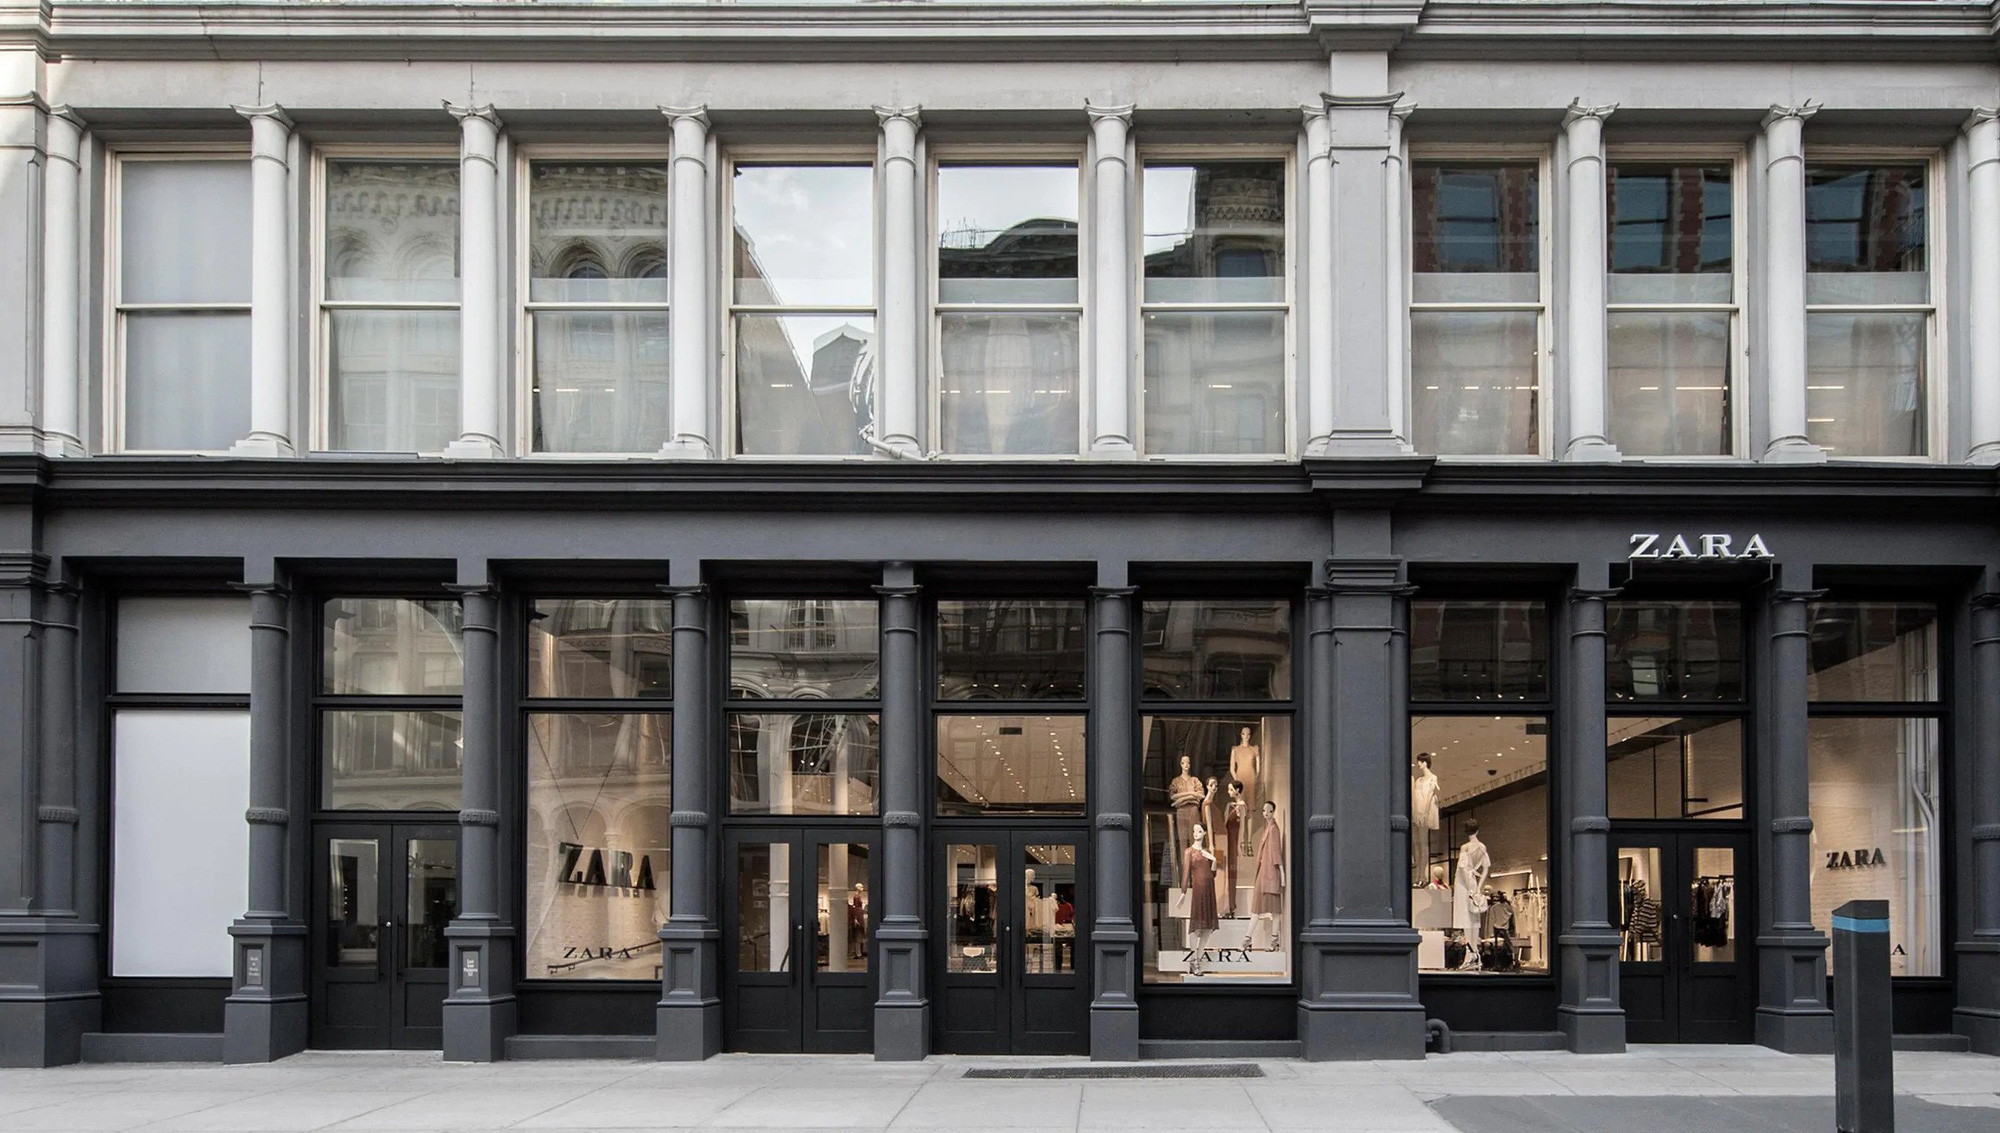 Zara đóng cửa 1.200 cửa hàng trên toàn cầu trong vòng 2 năm tới - Ảnh 1.